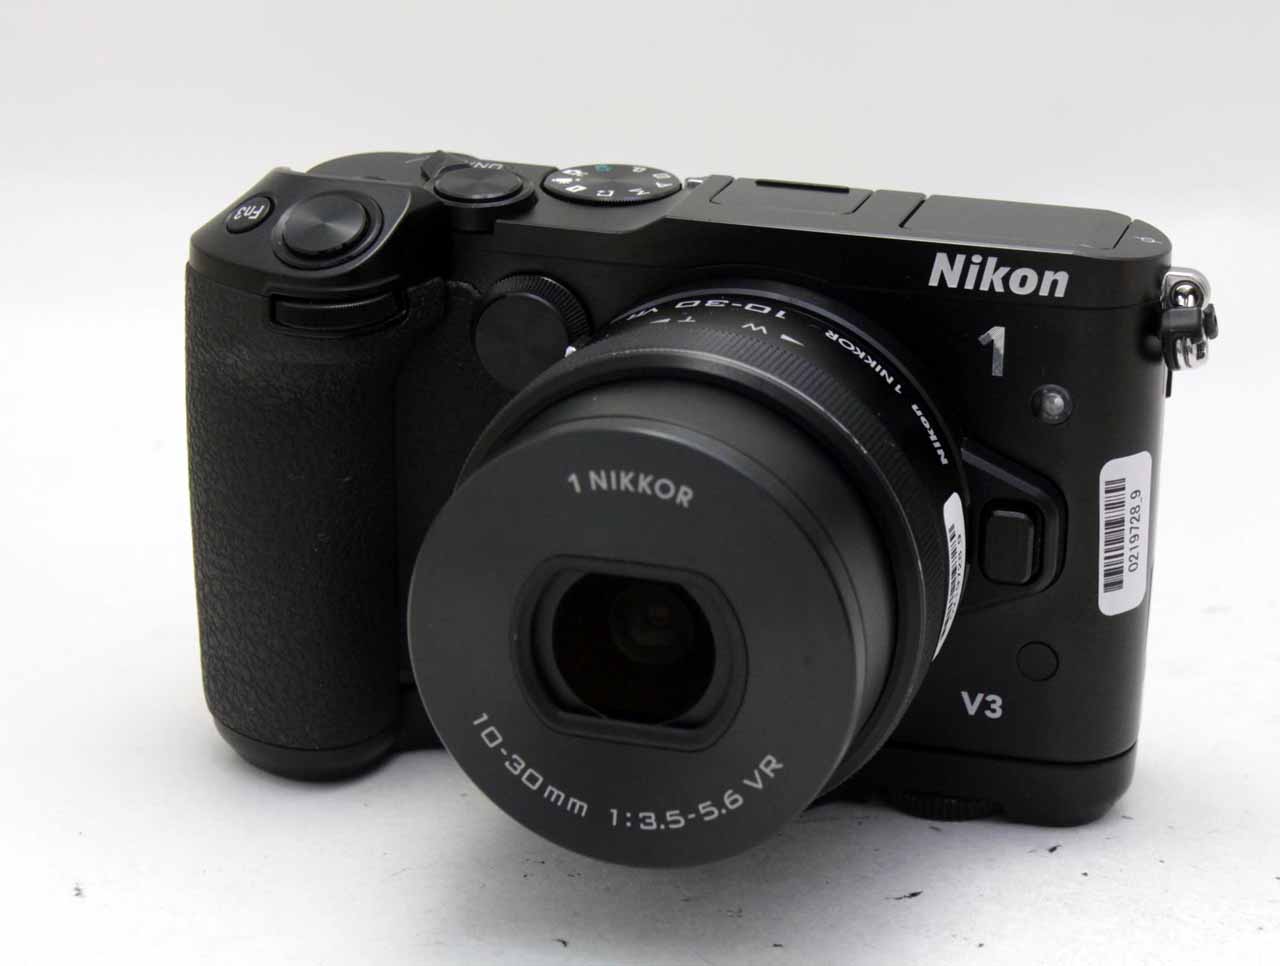 ニコン(nikon) Nikon 1 V3 標準パワーズームレンズキット + グリップ GR-N1010